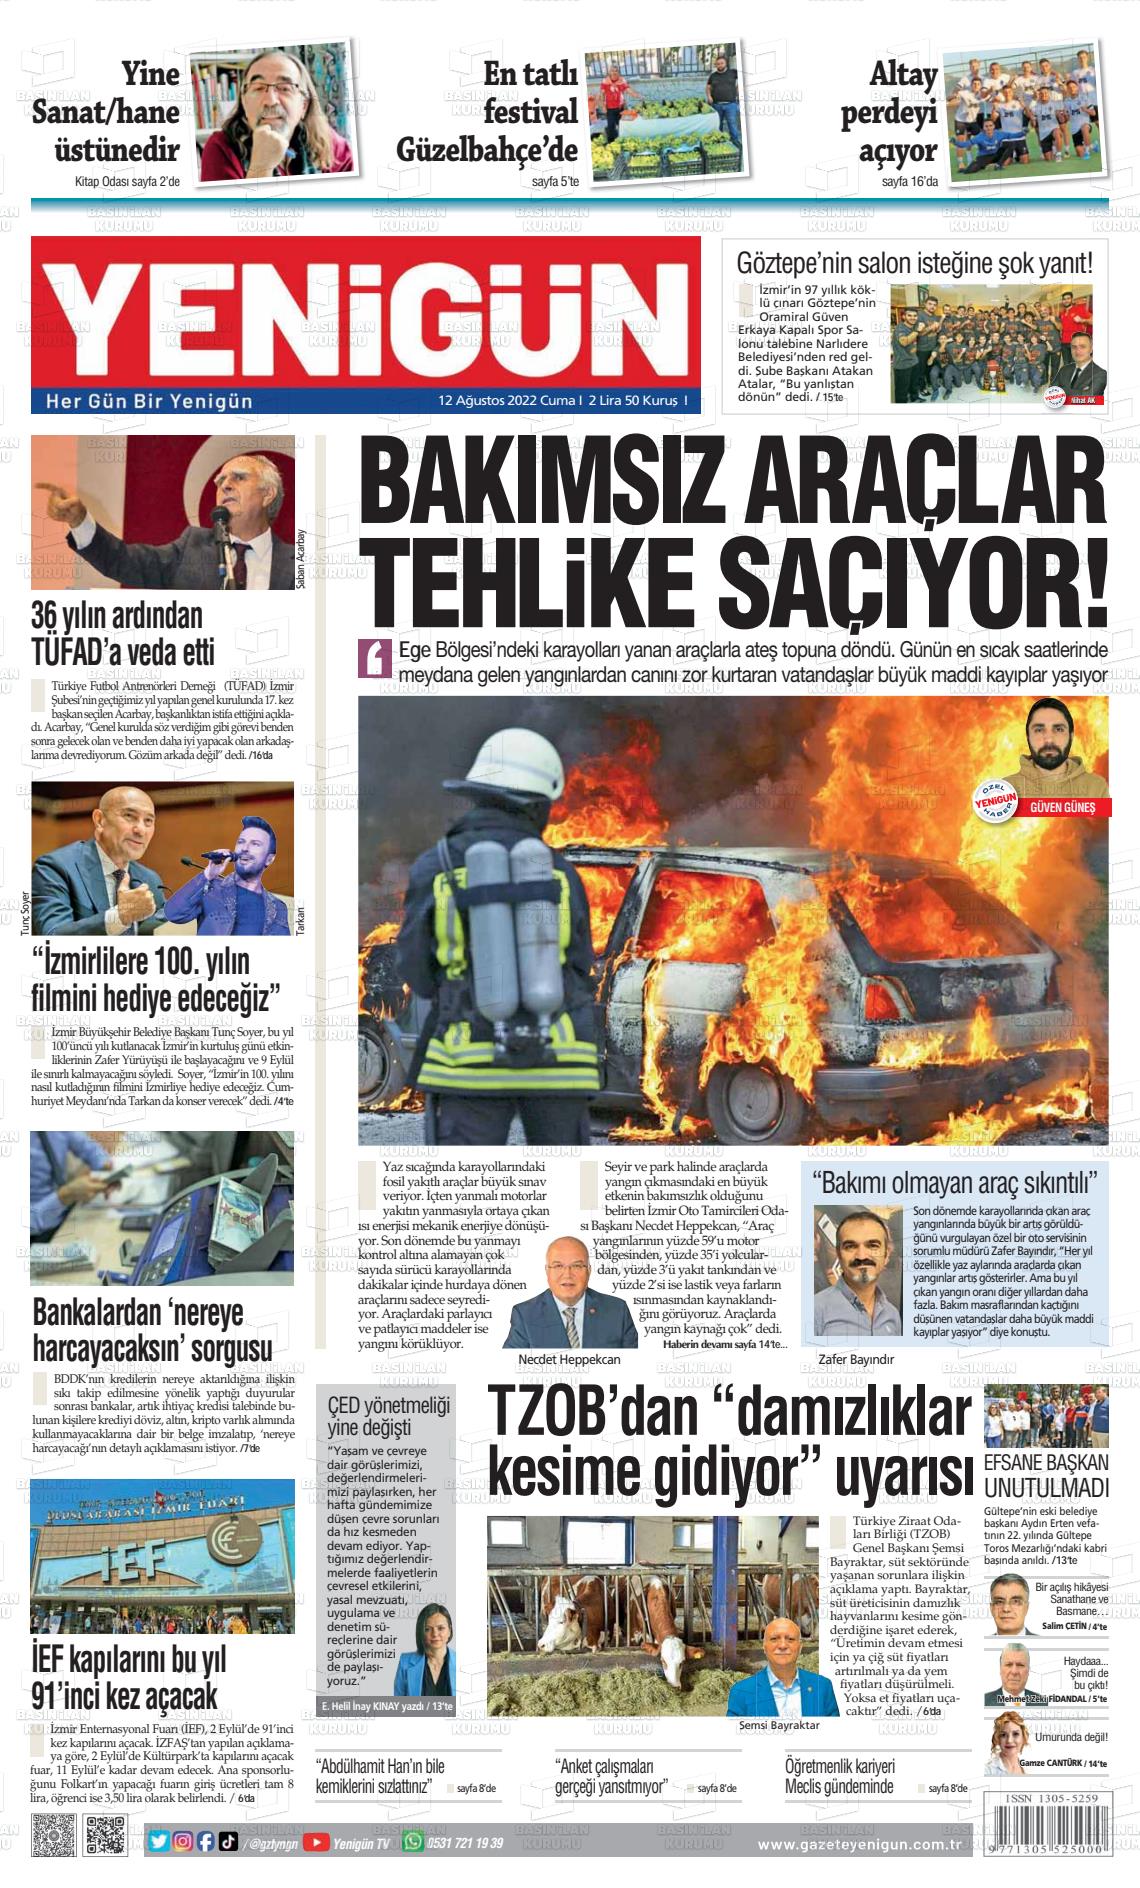 12 Ağustos 2022 Yeni Gün Gazete Manşeti